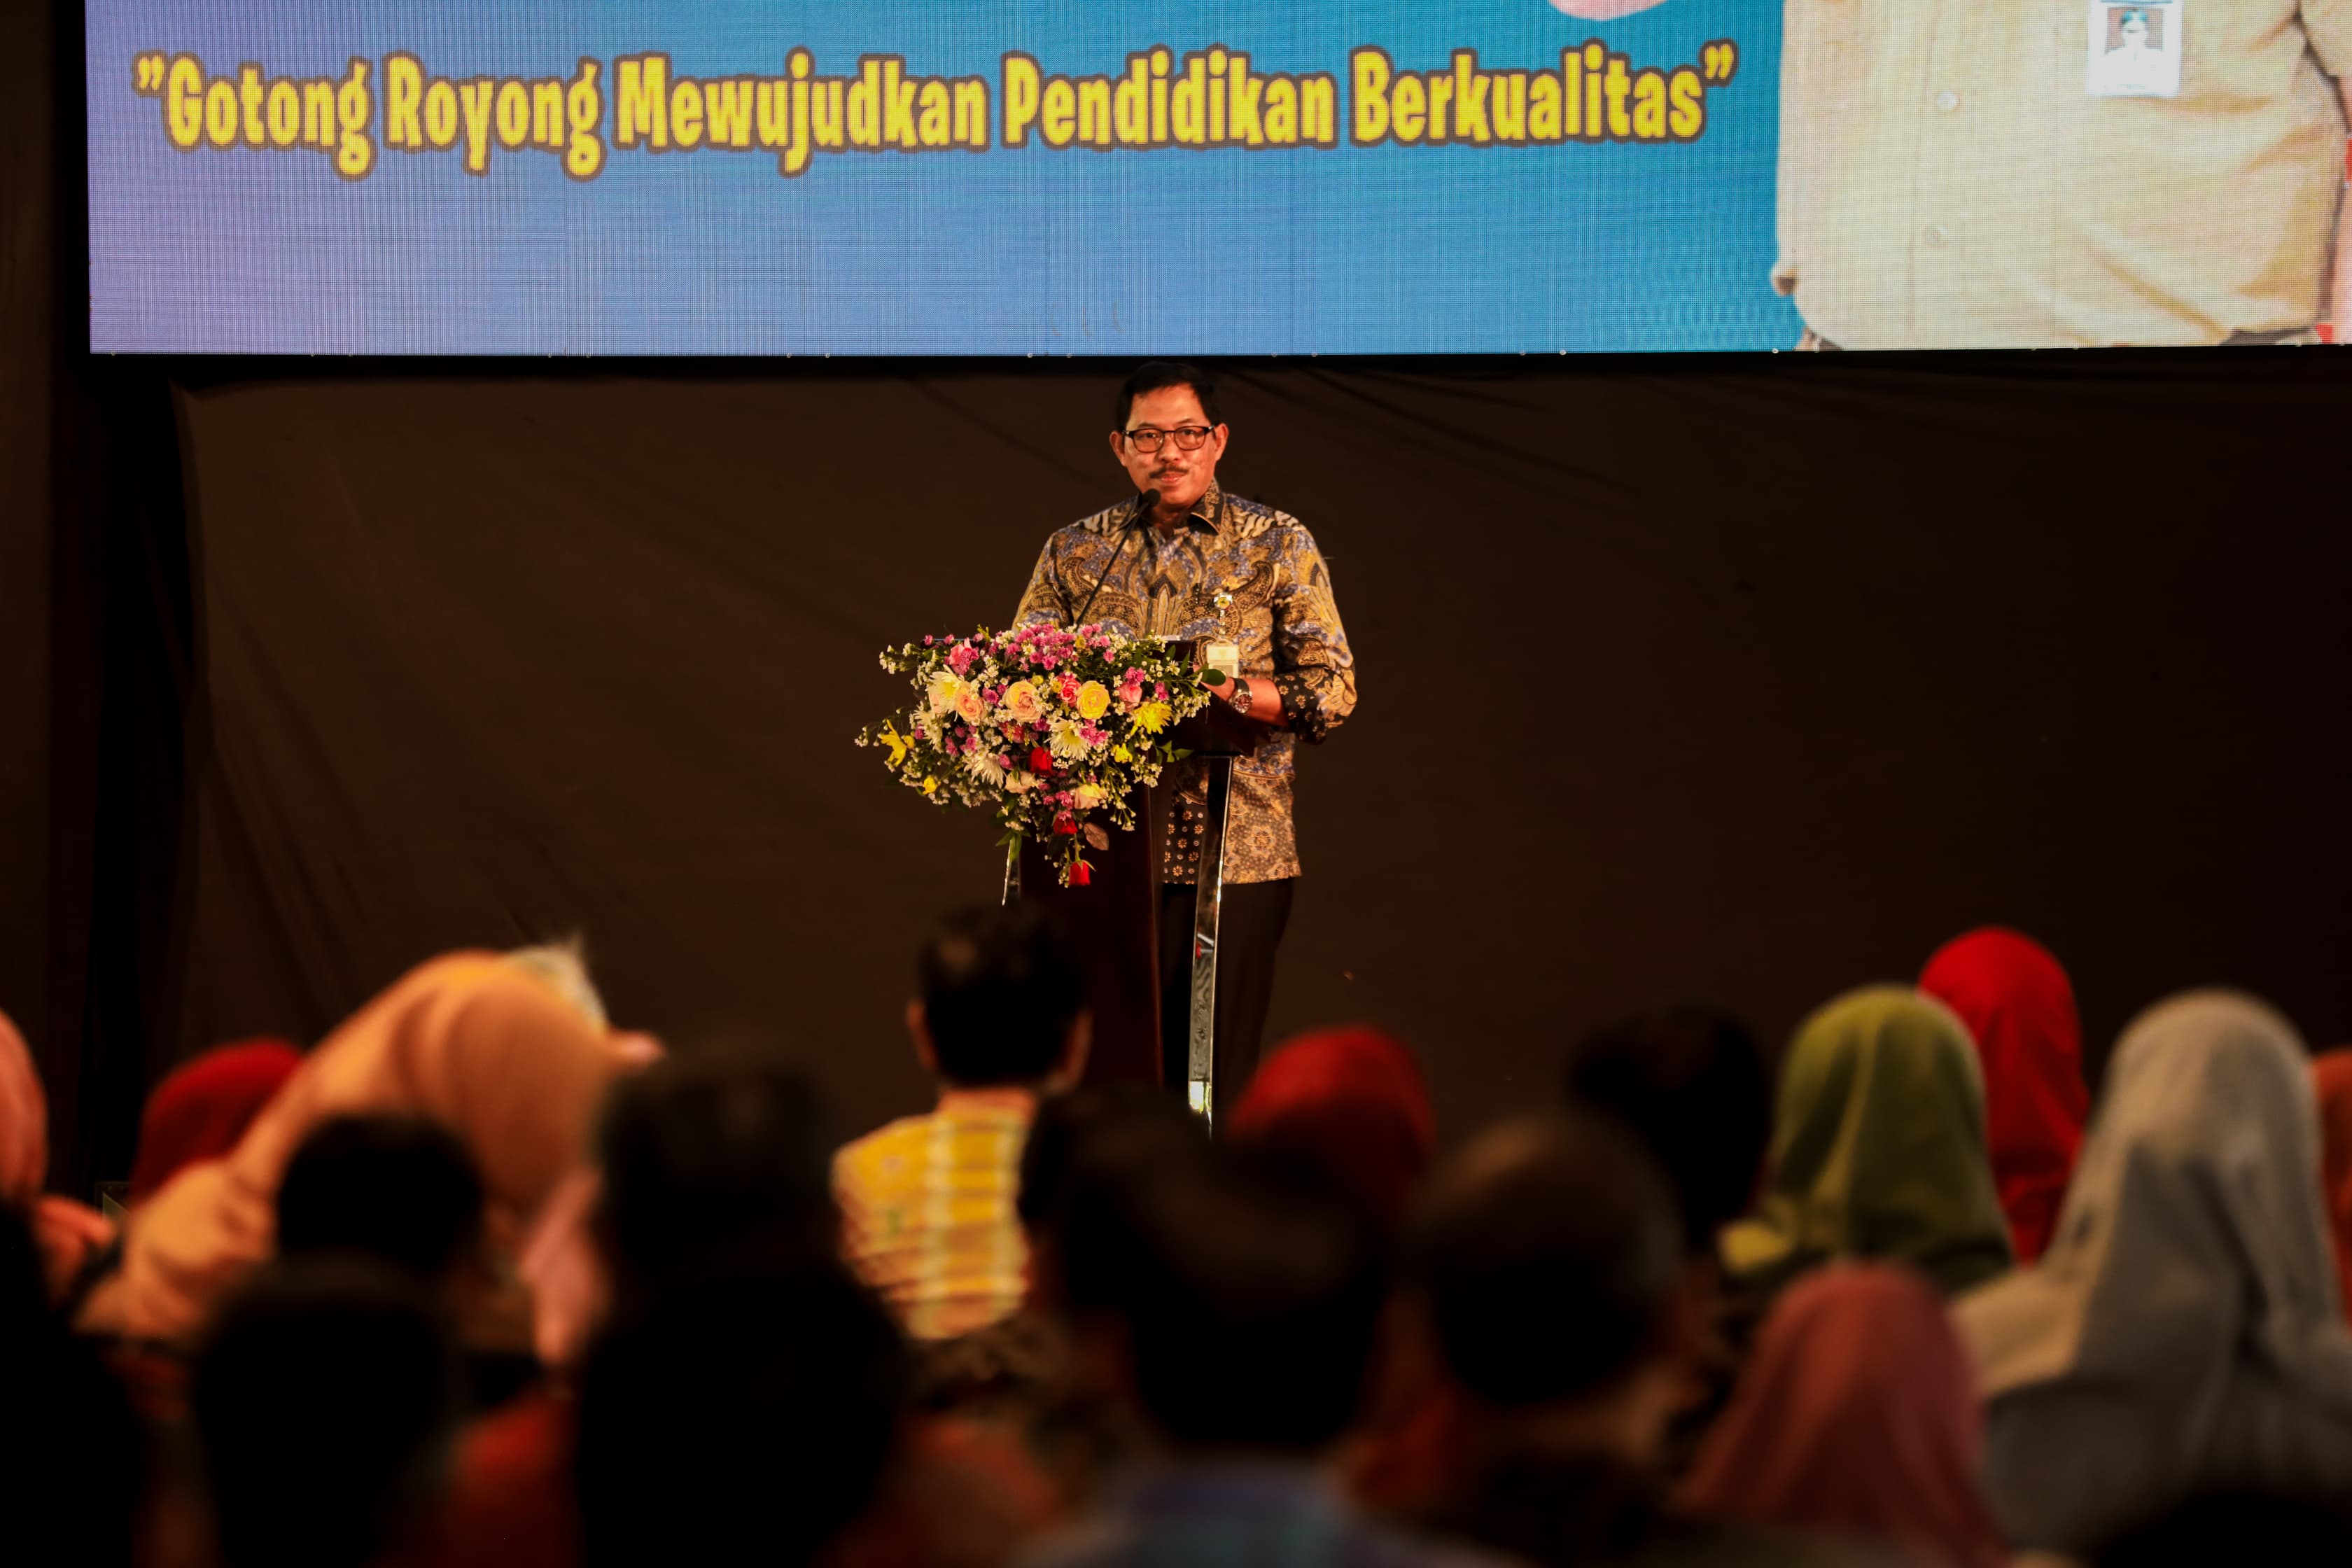 Hadapi Bonus Demografi, Pj Gubernur Jateng Dorong Kepala Sekolah Ciptakan SDM Berkualitas 